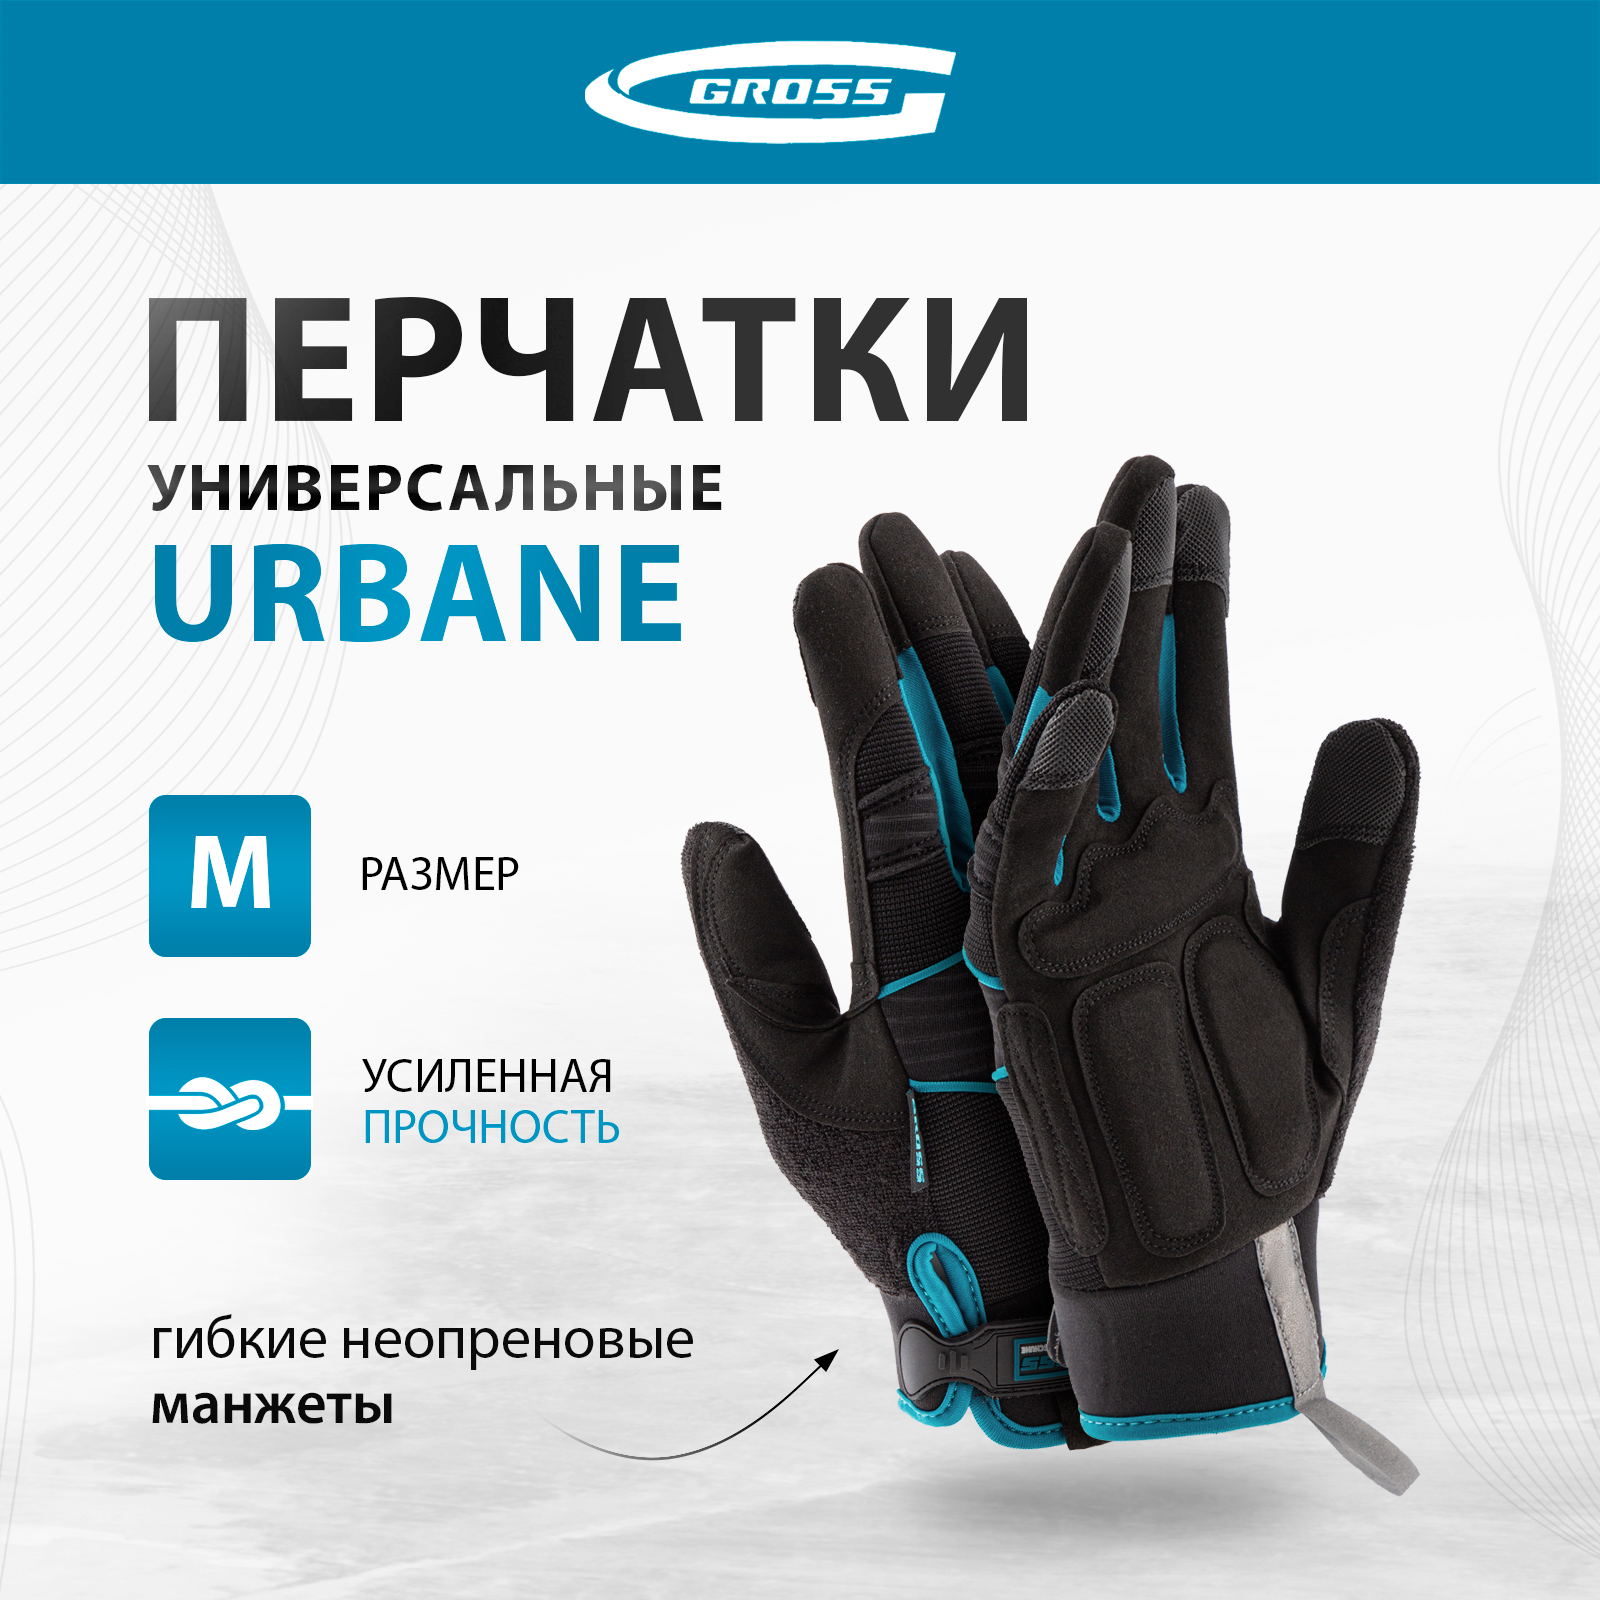 Перчатки универсальные комбинированные GROSS URBANE размер M (8) 90311 перчатки универсальные denzel комбинированные строительные 67991